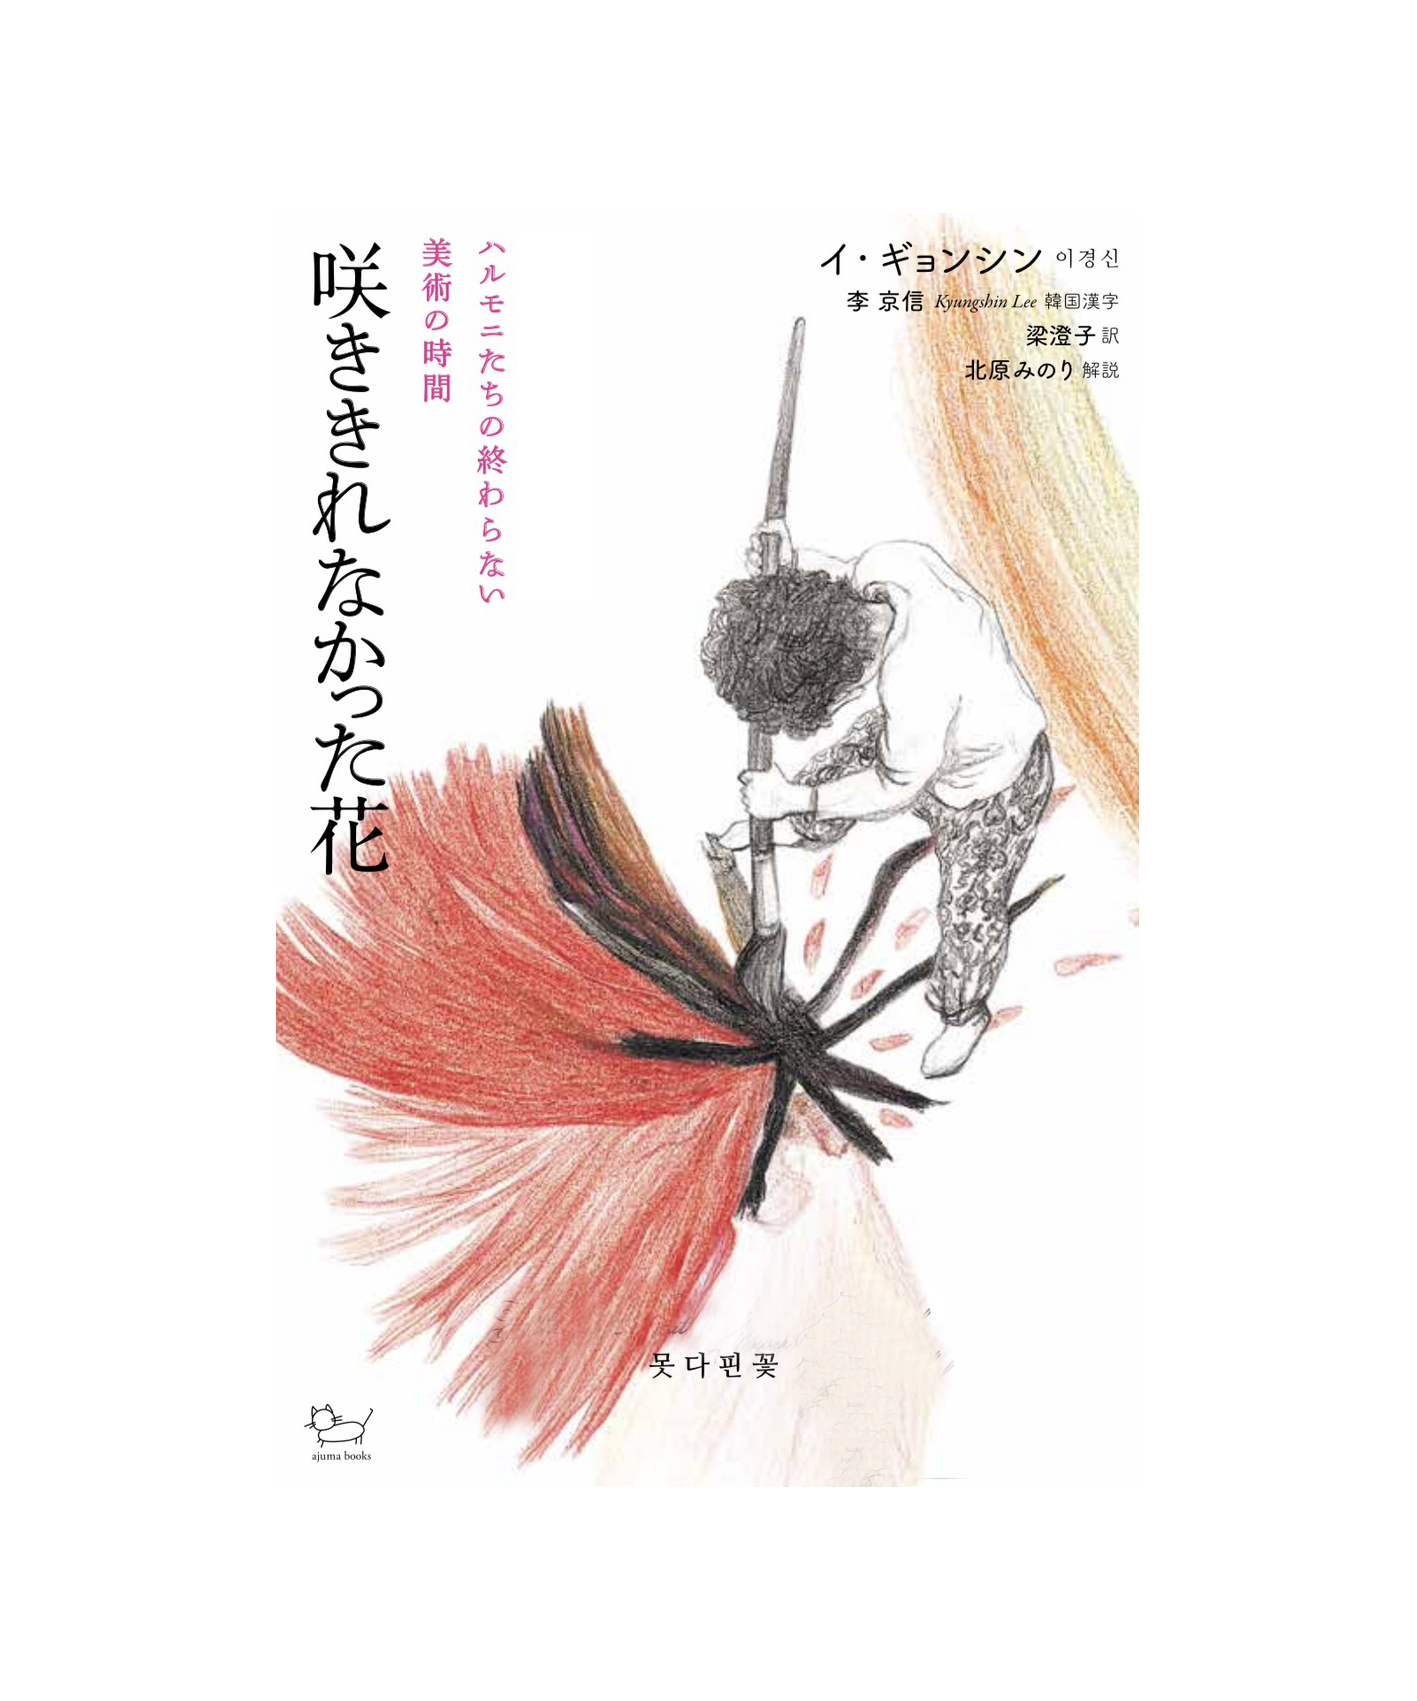 ajuma books ブックトーク「咲ききれなかった花」の背景にあった物語